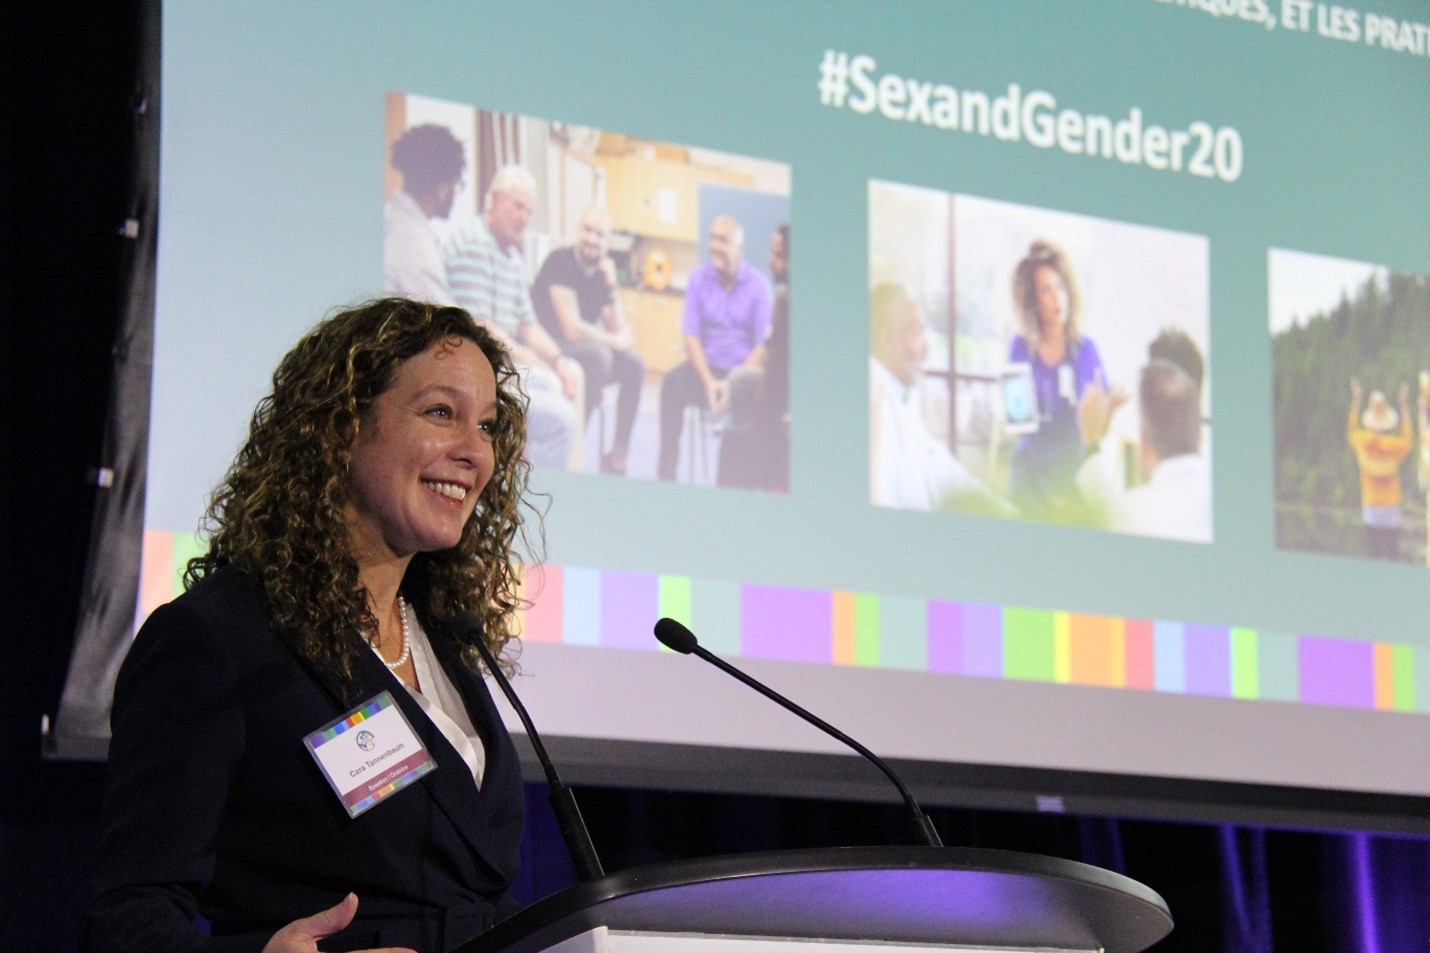 La Dre Cara Tannenbaum, debout sur un podium, regarde en avant et sourit. Derrière elle, un écran affiche des images colorées et le texte suivant : #SexAndGender20.